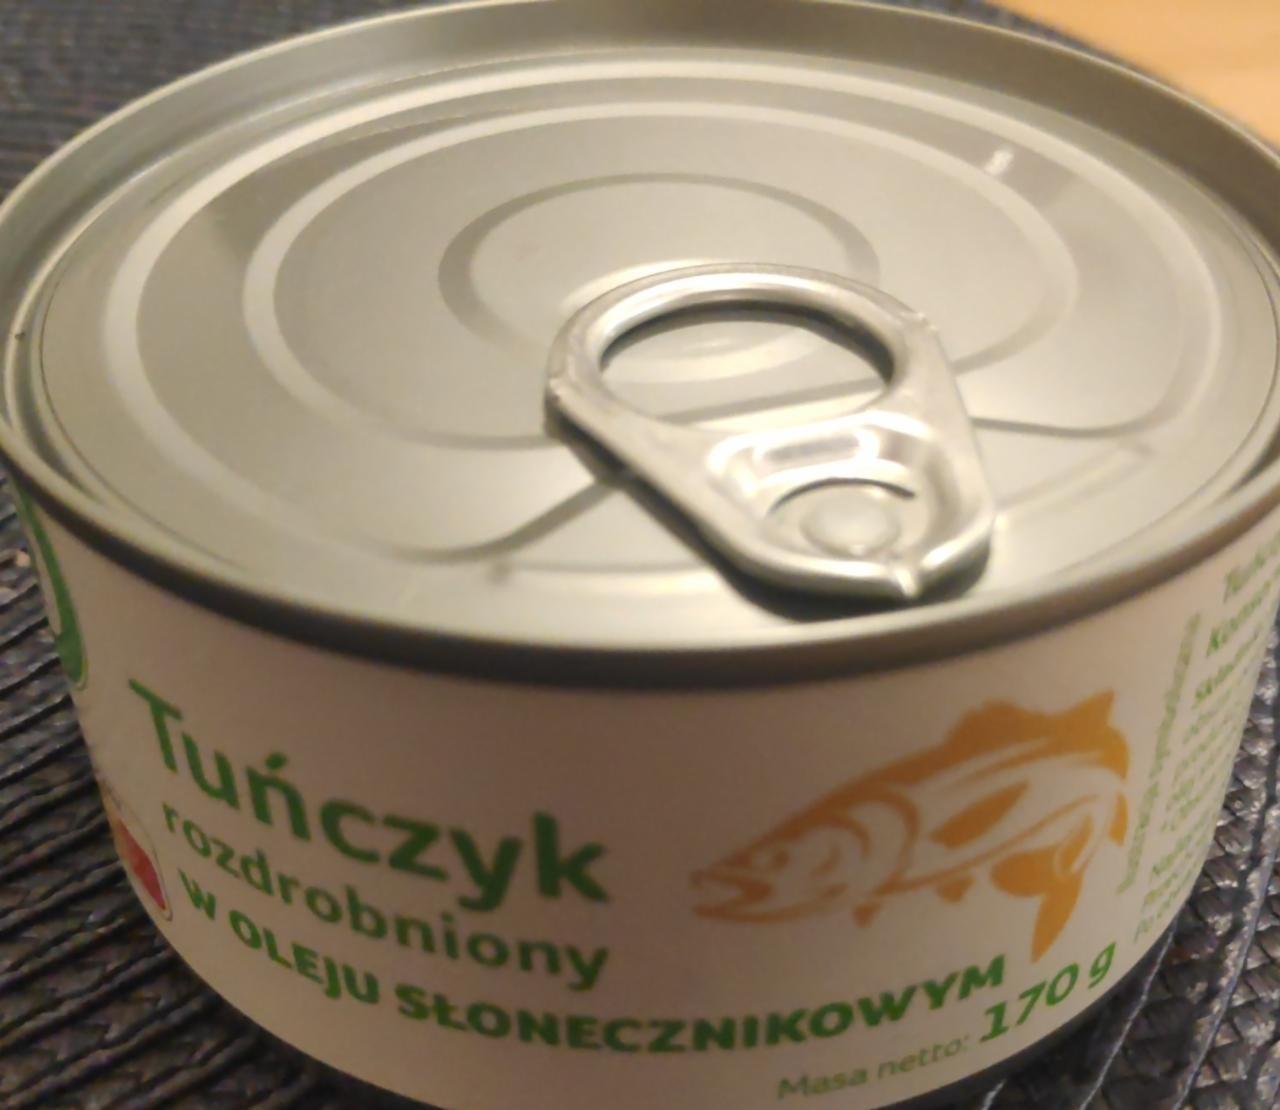 Zdjęcia - tuńczyk rozdrobniony w oleju słonecznikowym Auchan